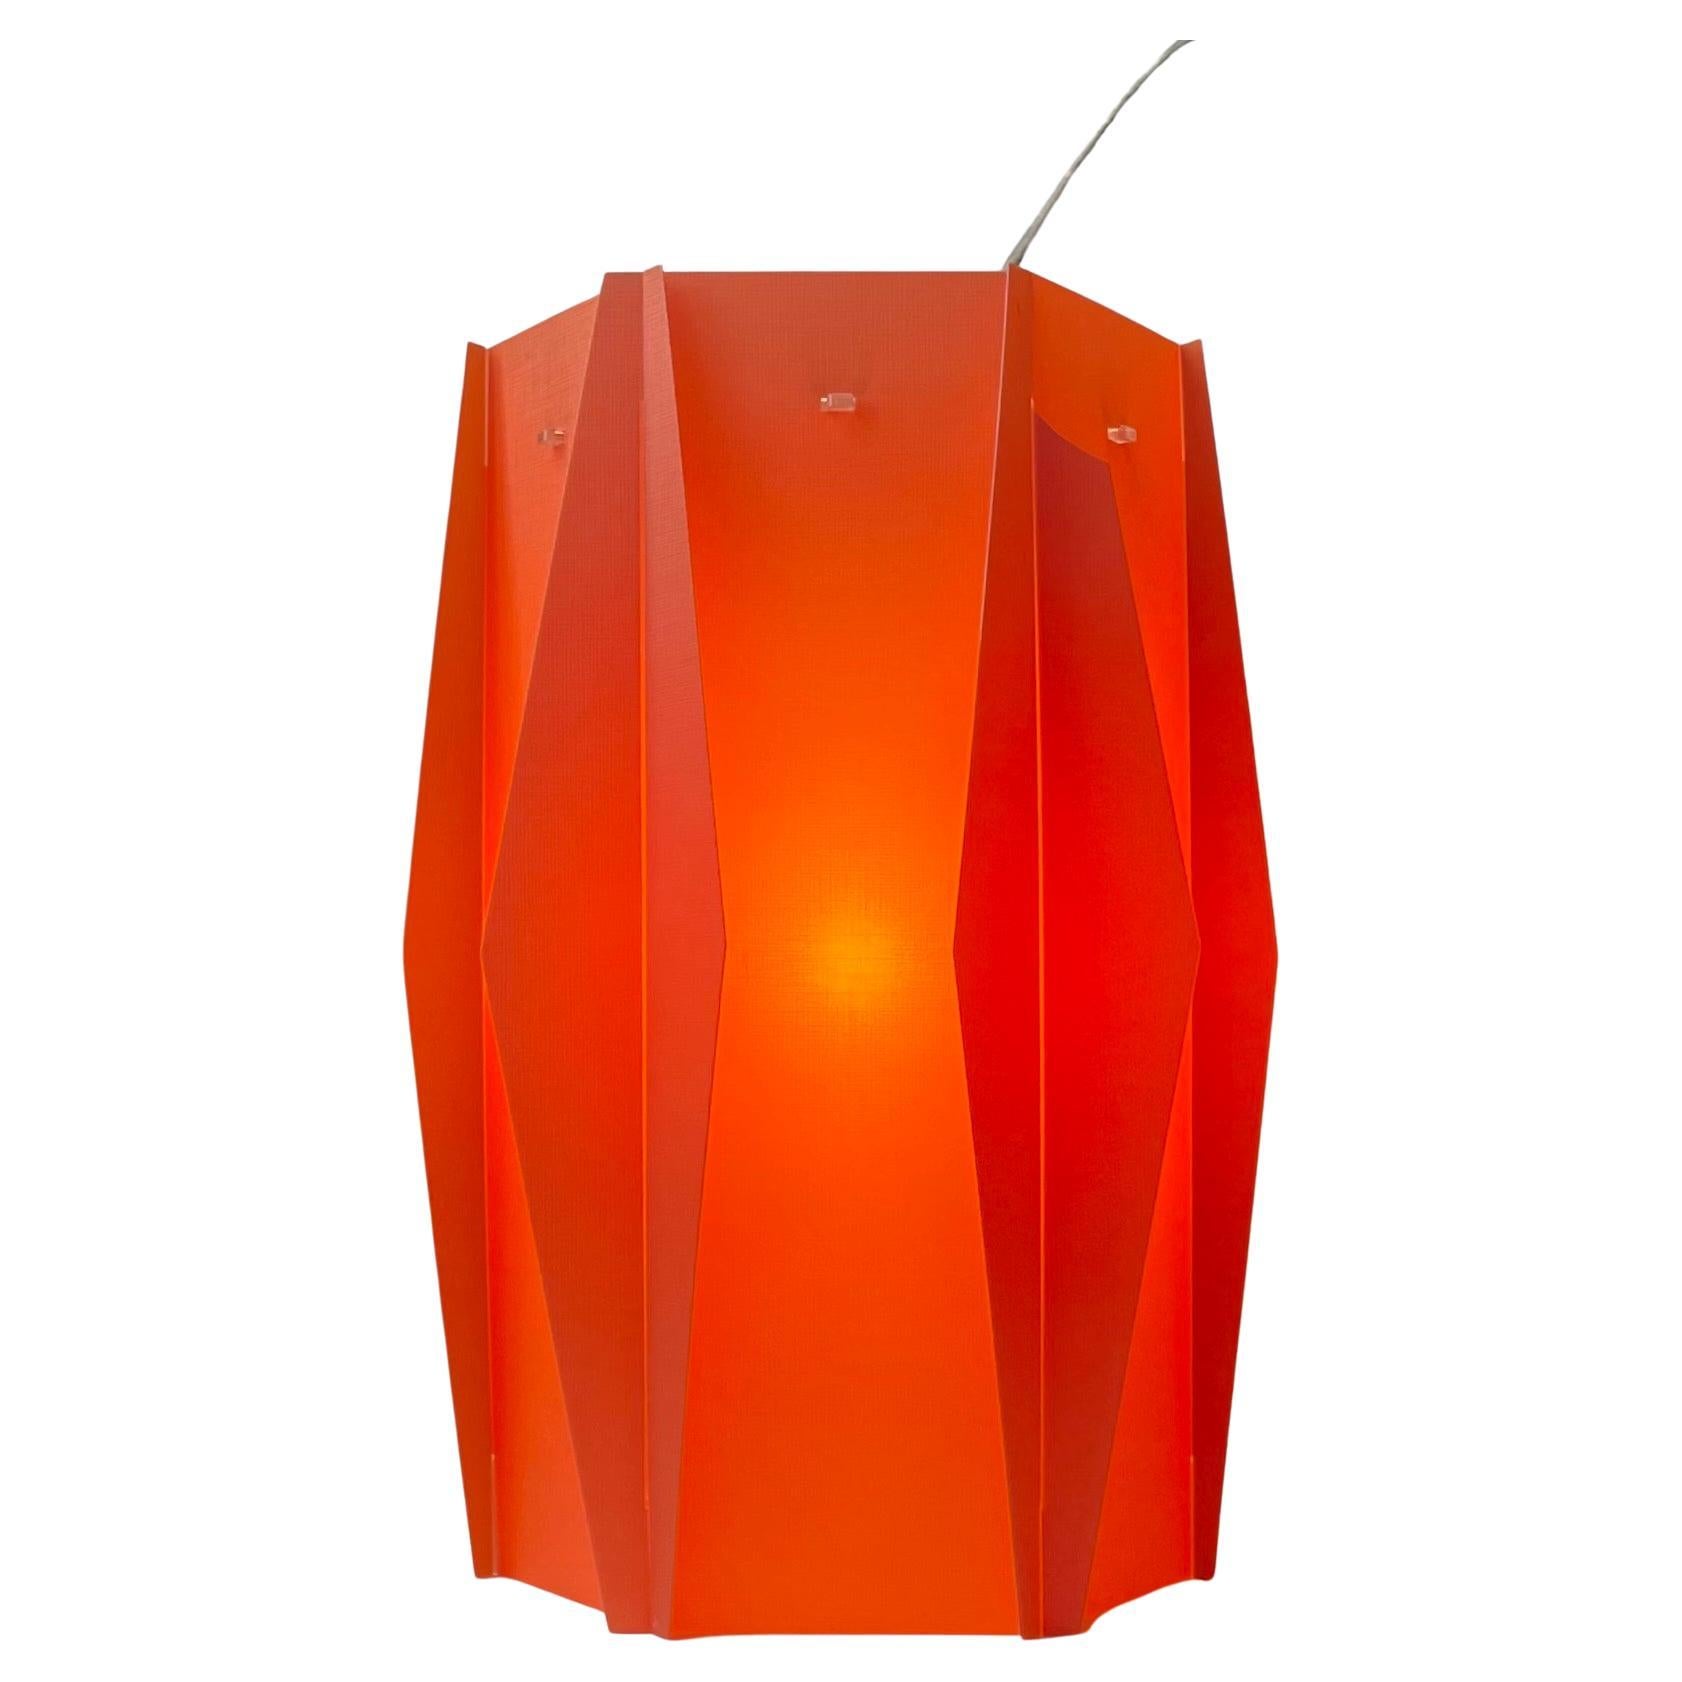 Danish Modern Lars Eiler Schiøler Coral Harlequin Hanging Lamp for Hoyrup, 1960s For Sale